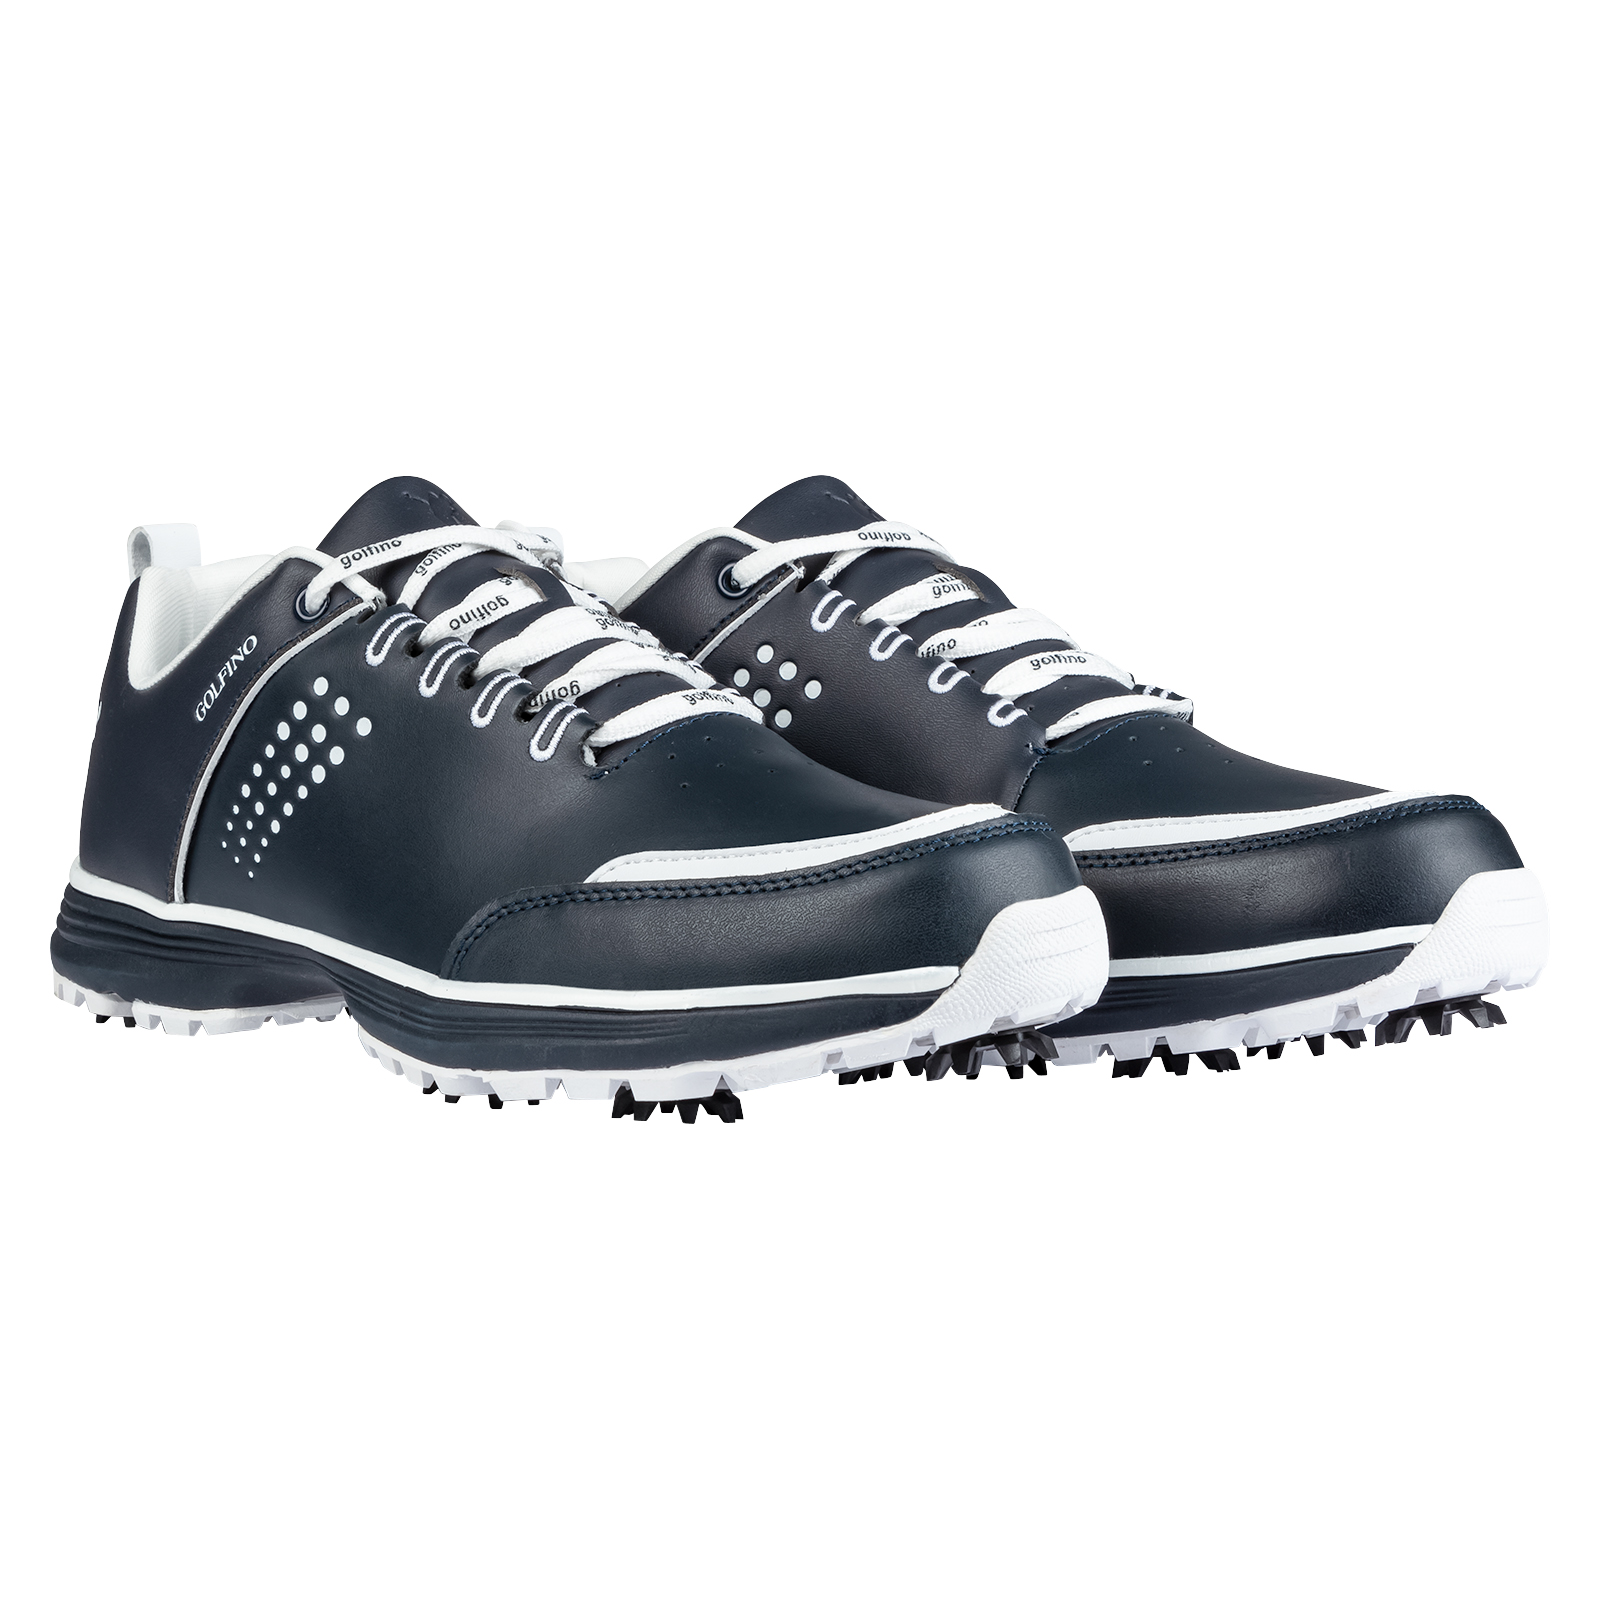 Chaussures de golf en cuir véritable à crampons d'allure moderne